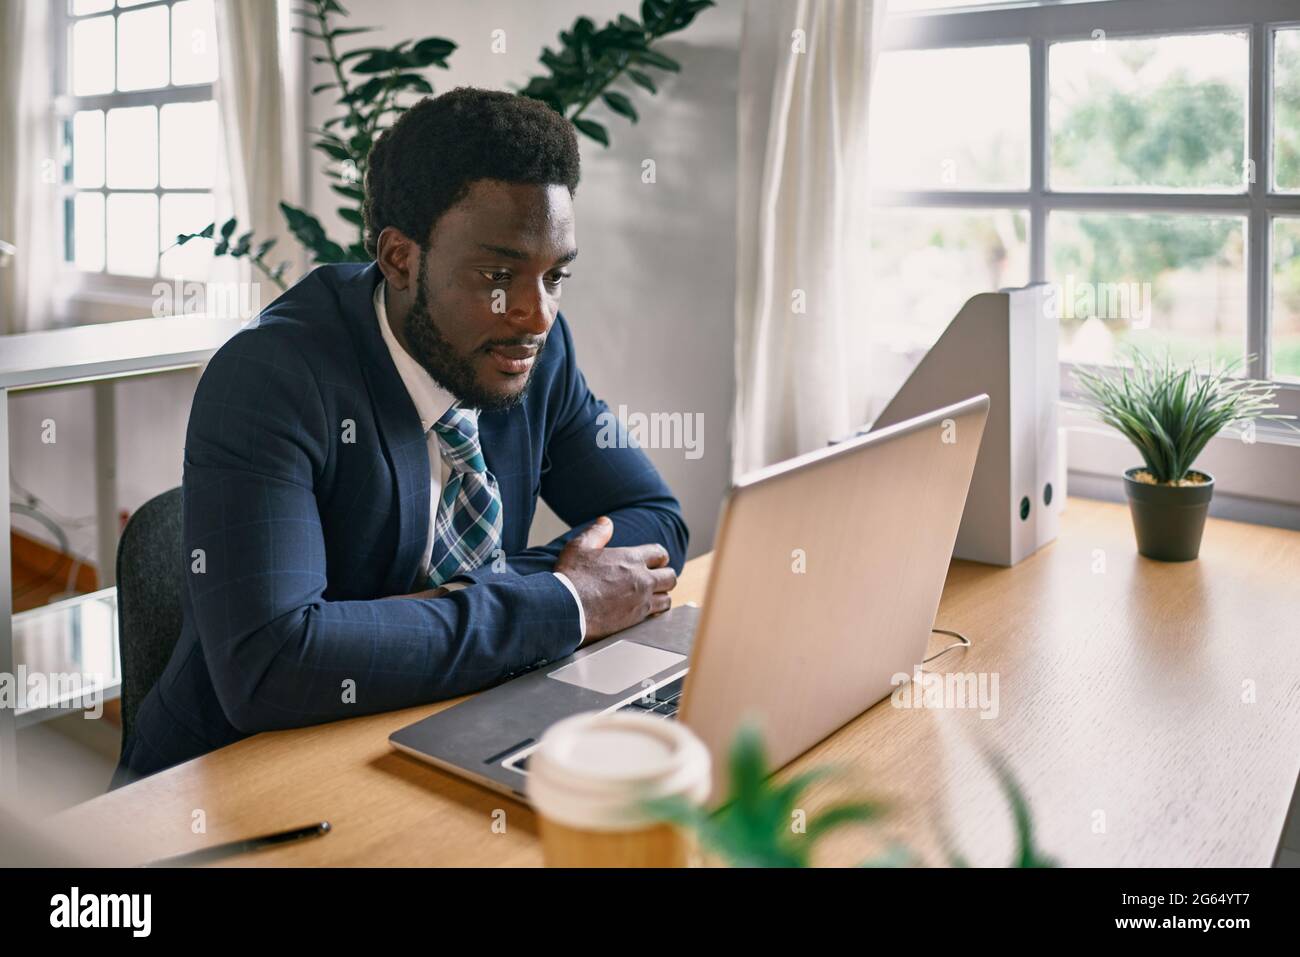 Jeune homme noir travaillant dans un bureau moderne - Focus sur le visage Banque D'Images